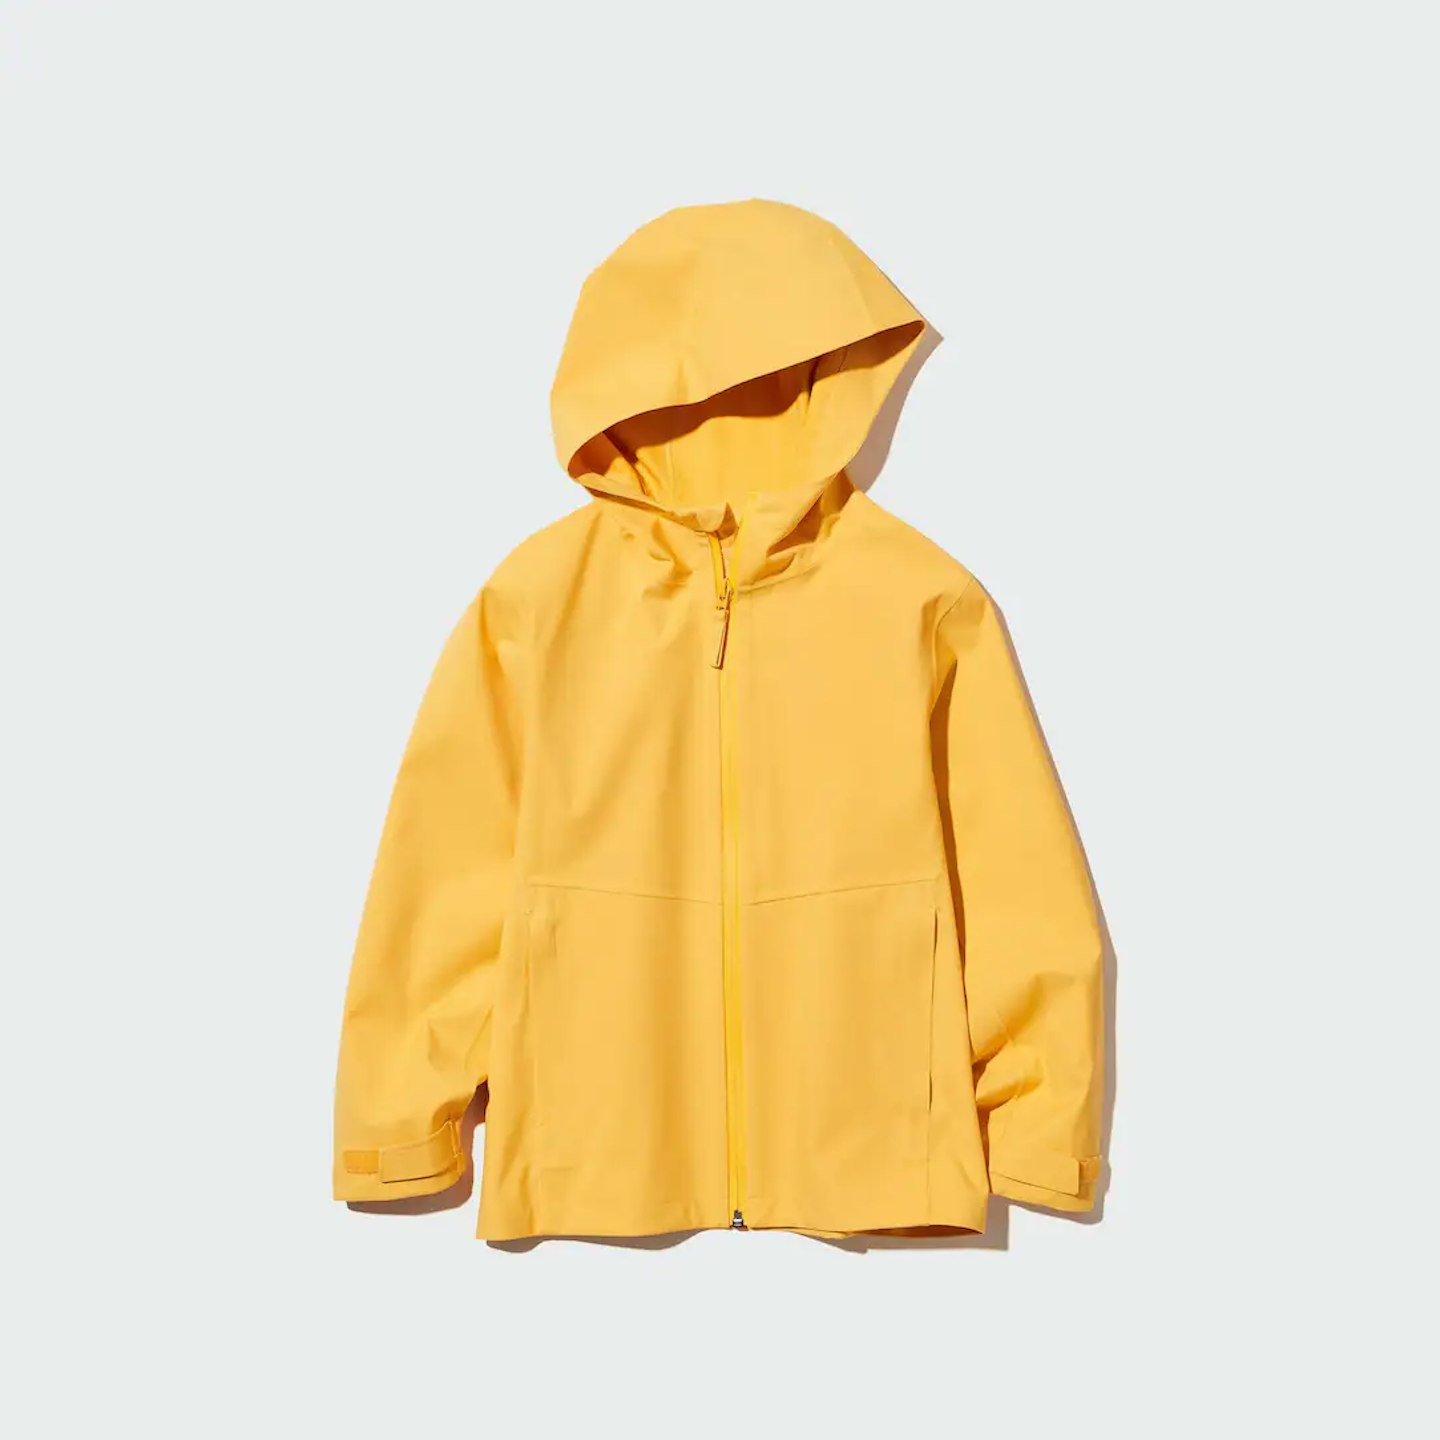 uniqlo best kids' raincoats 